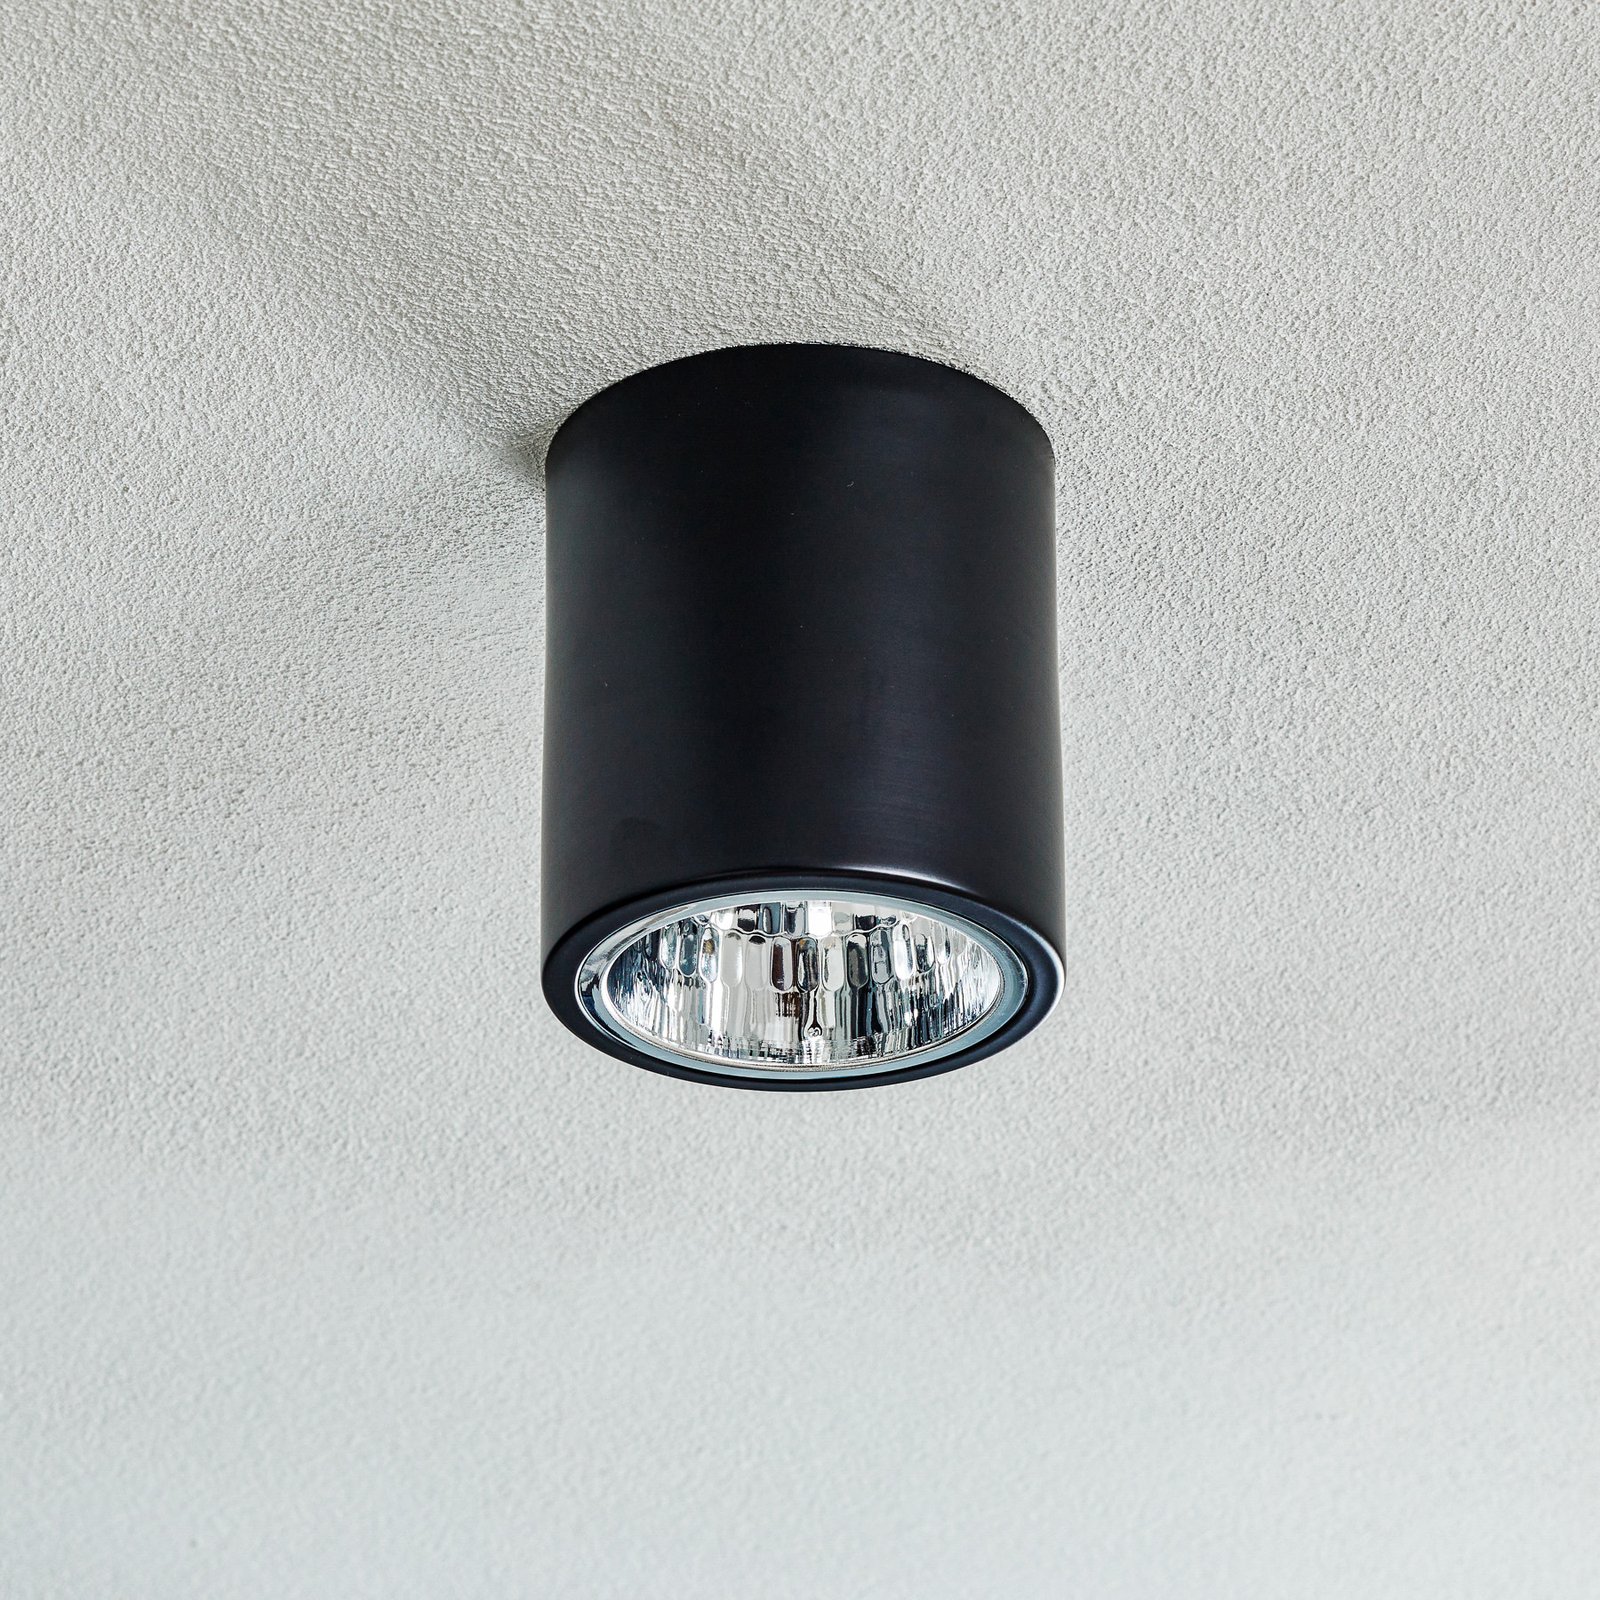 Downlight round ceiling spotlight, black Ø 13.3 cm